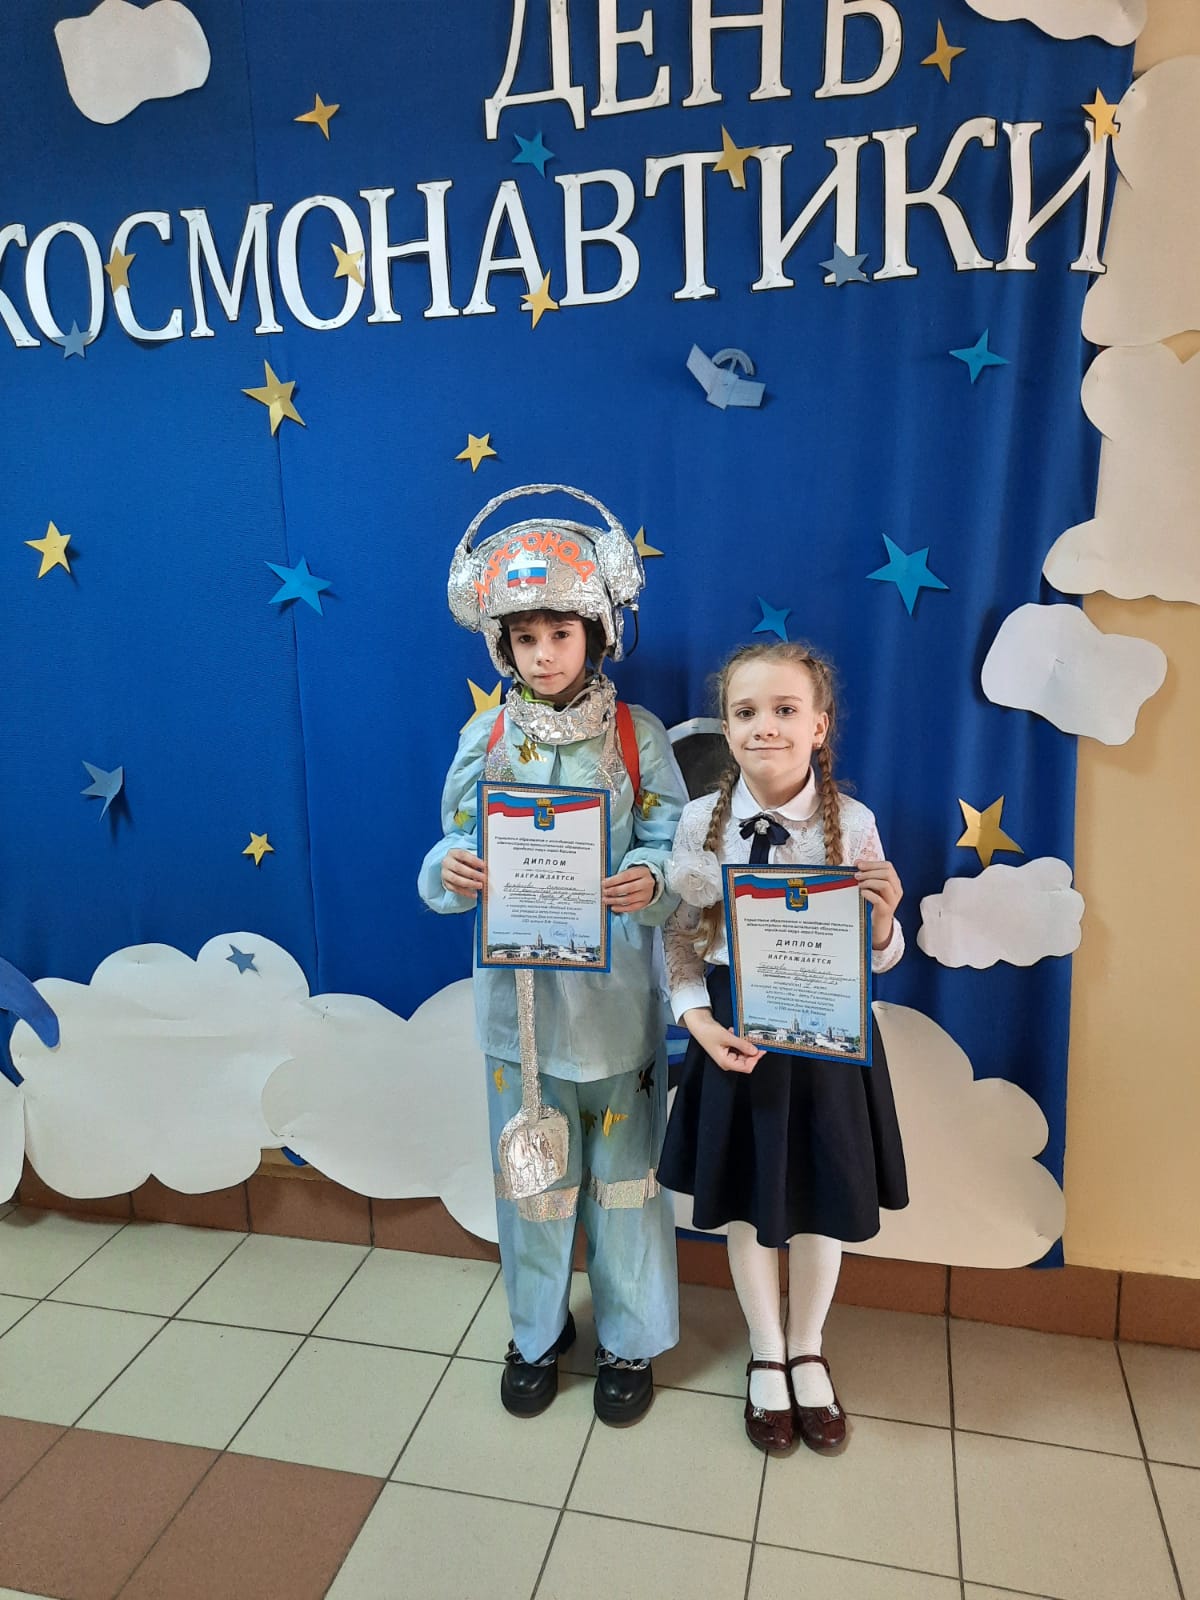 День космонавтики события. Мероприятия ко Дню космонавтики. День космонавтики мероприятия в школе.